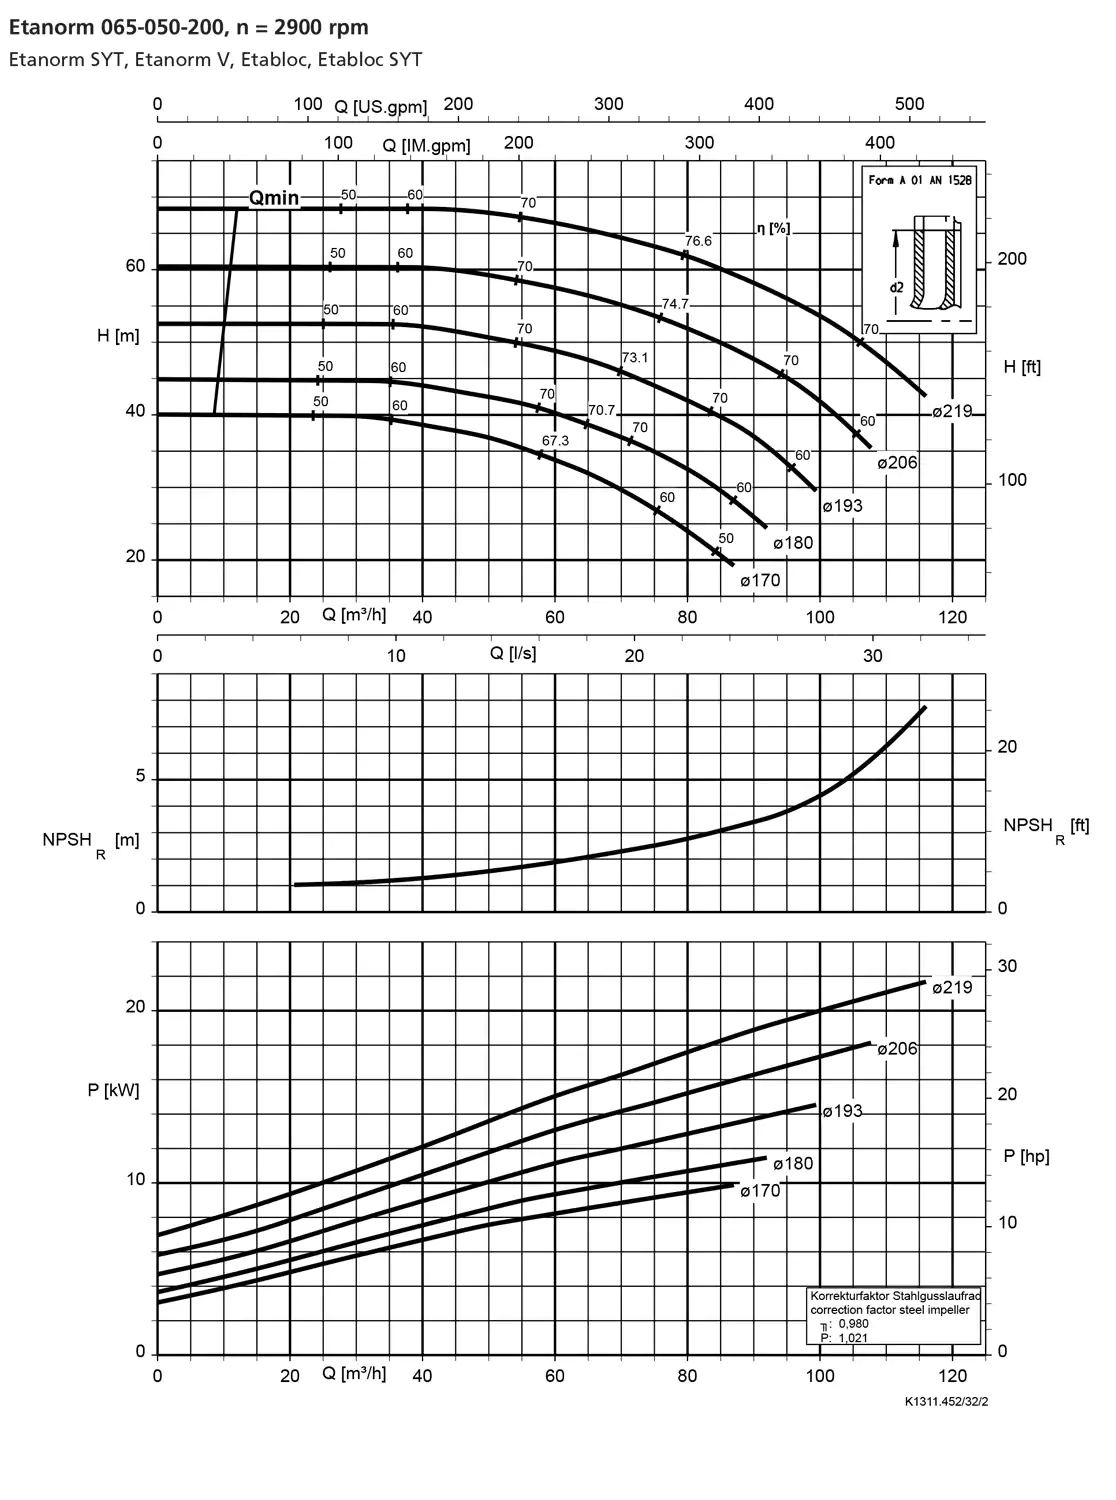 نمودار-کارکرد-پمپ-etanorm-65-050-200-2900